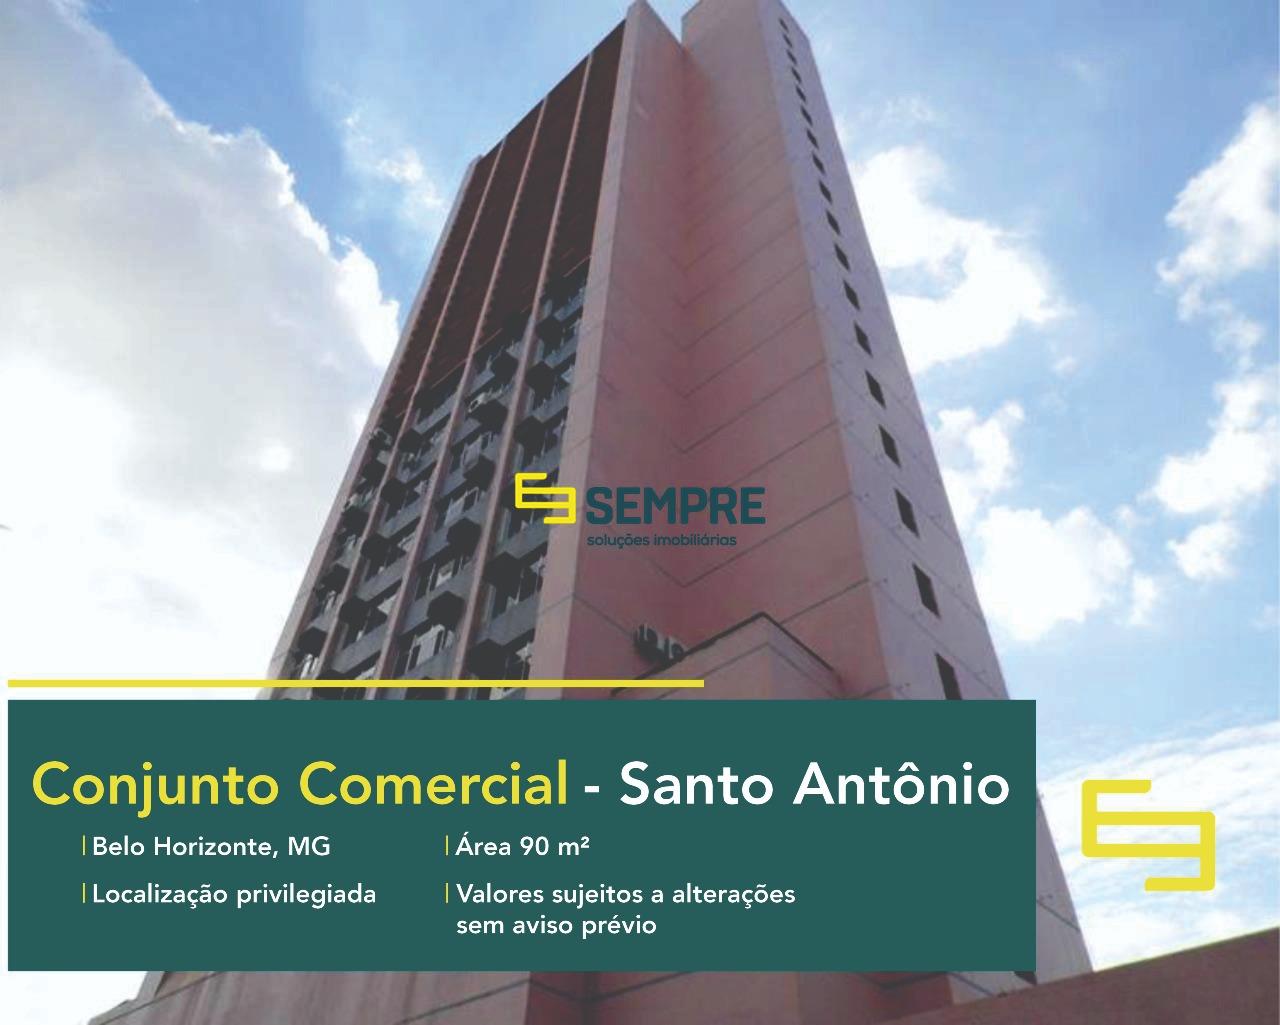 Conjunto de salas comerciais para vender no Santo Antônio em Belo Horizonte. O estabelecimento comercial conta com área de 45 m² cada.